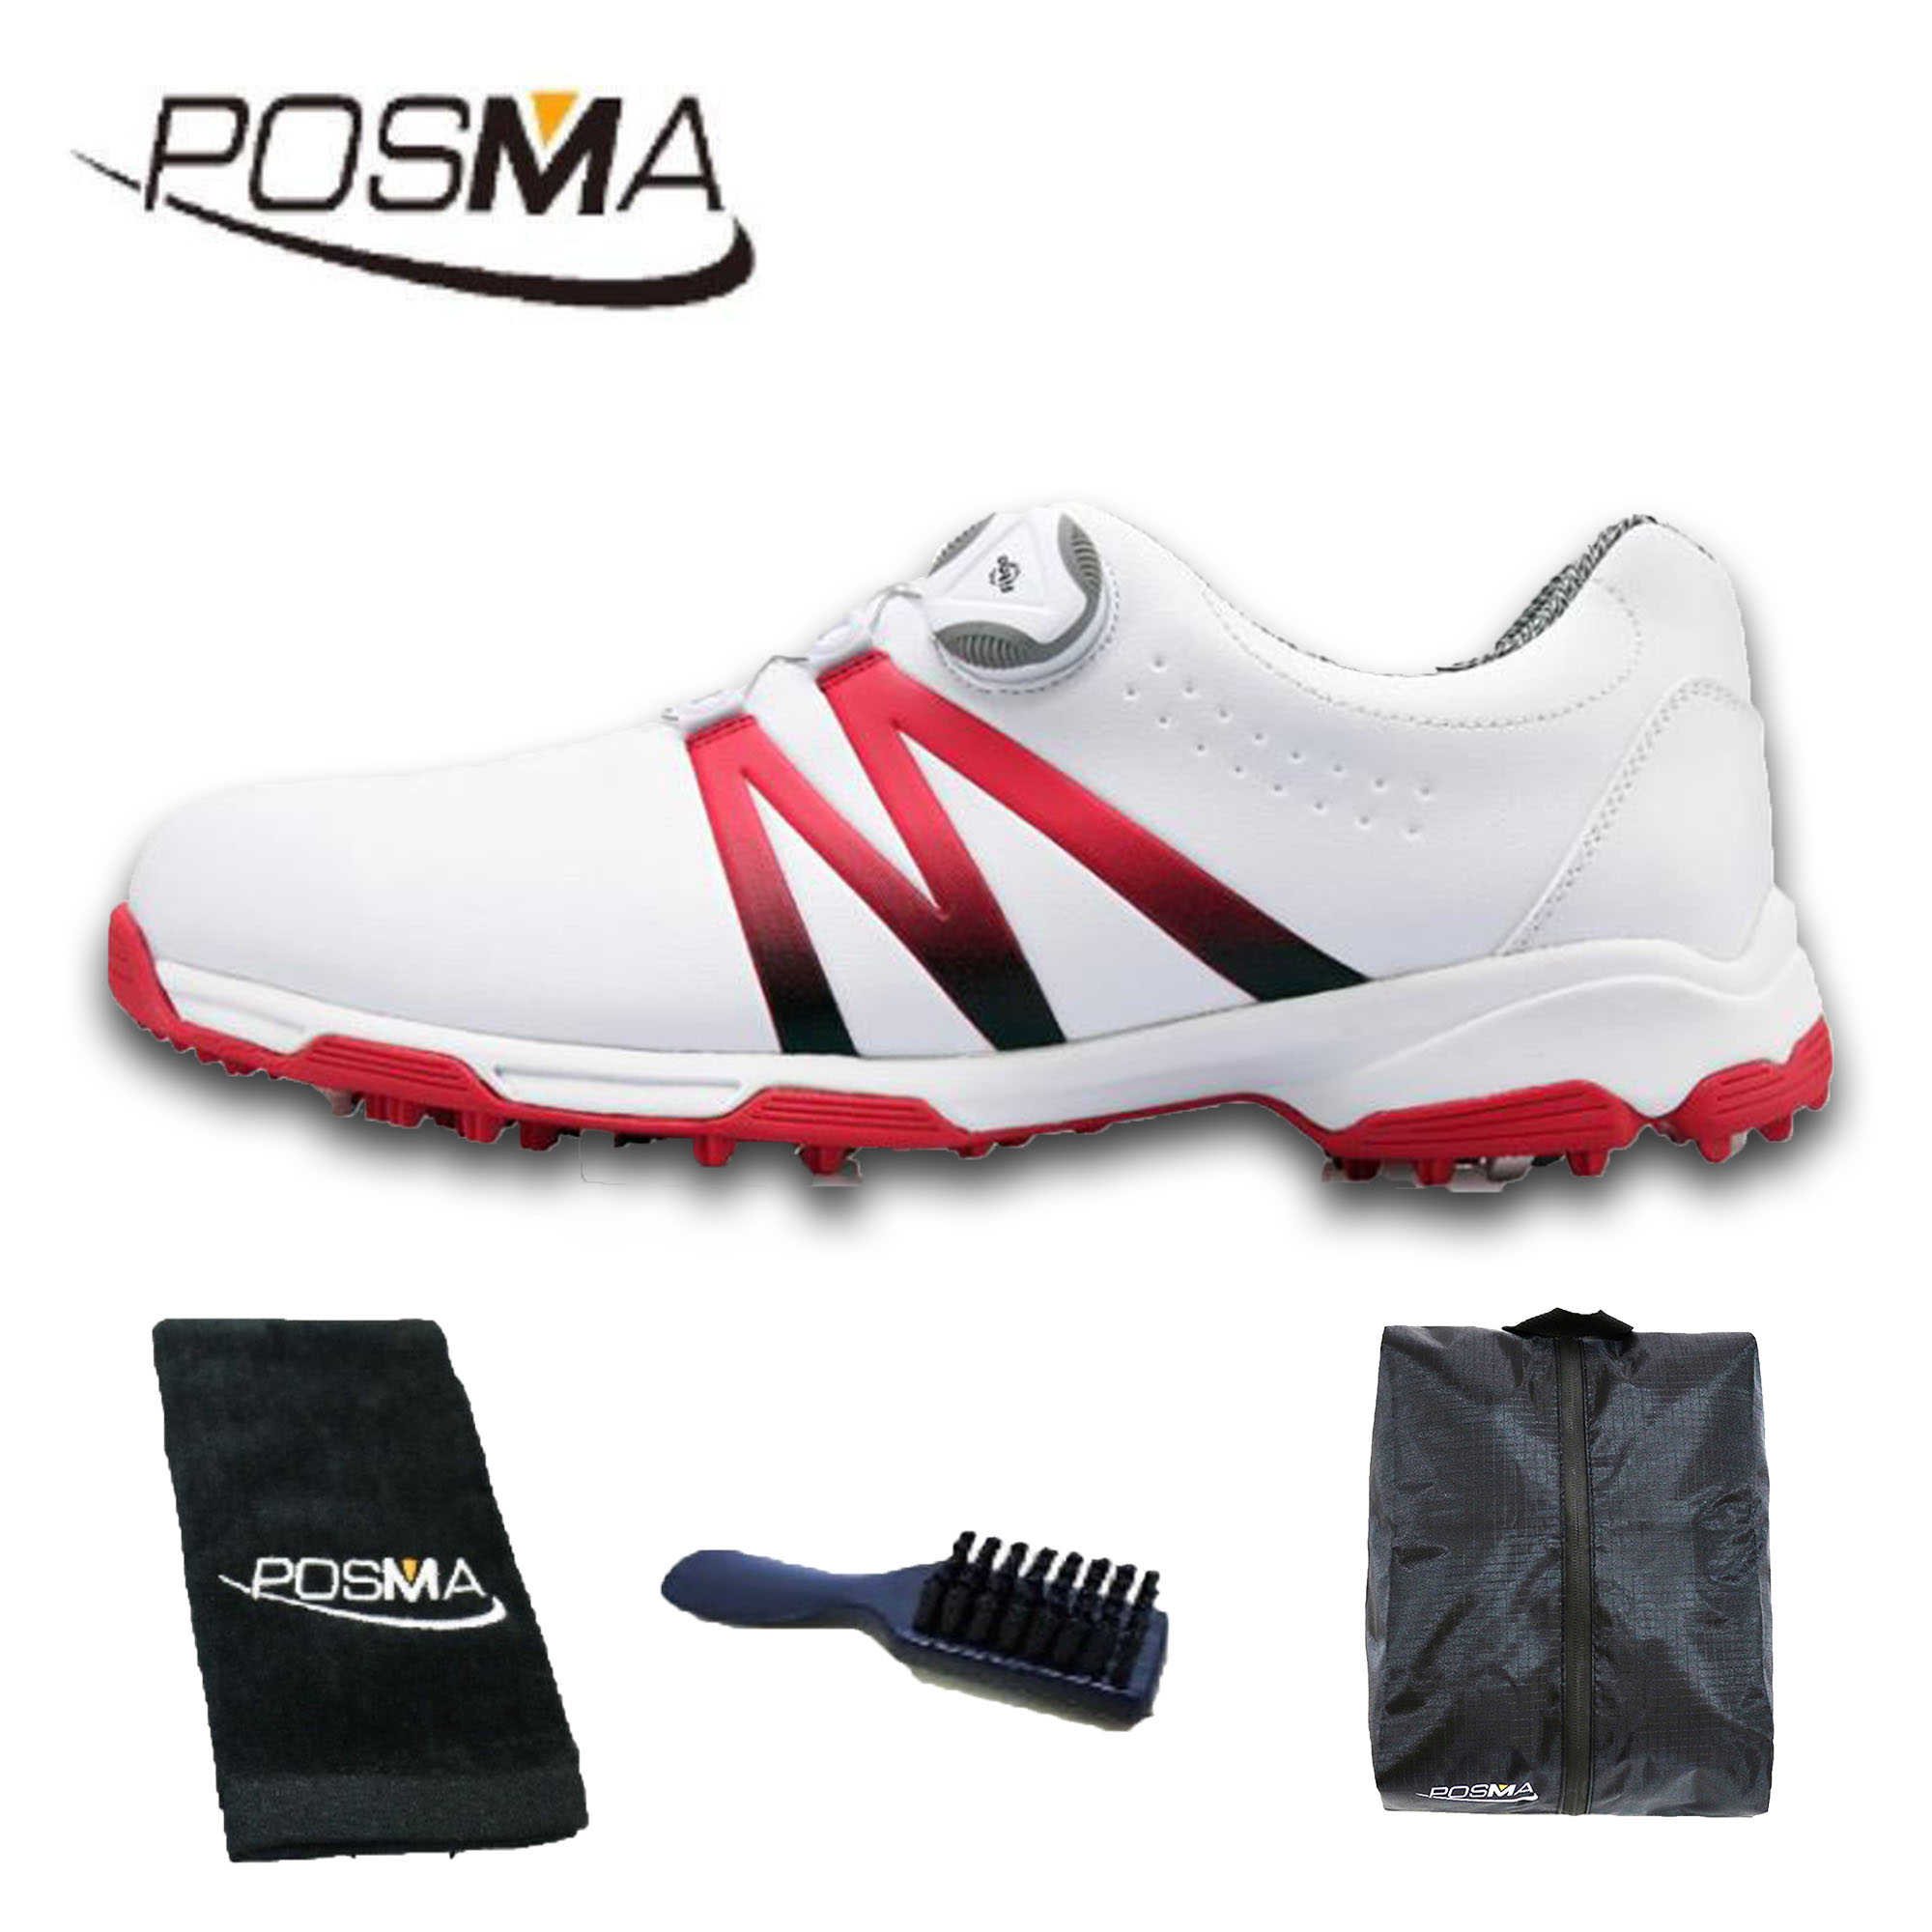 高爾夫男士球鞋 漸變色 旋轉鞋帶 防水透氣   GSH101 白 紅  配POSMA鞋包 2合1清潔刷   高爾夫球毛巾